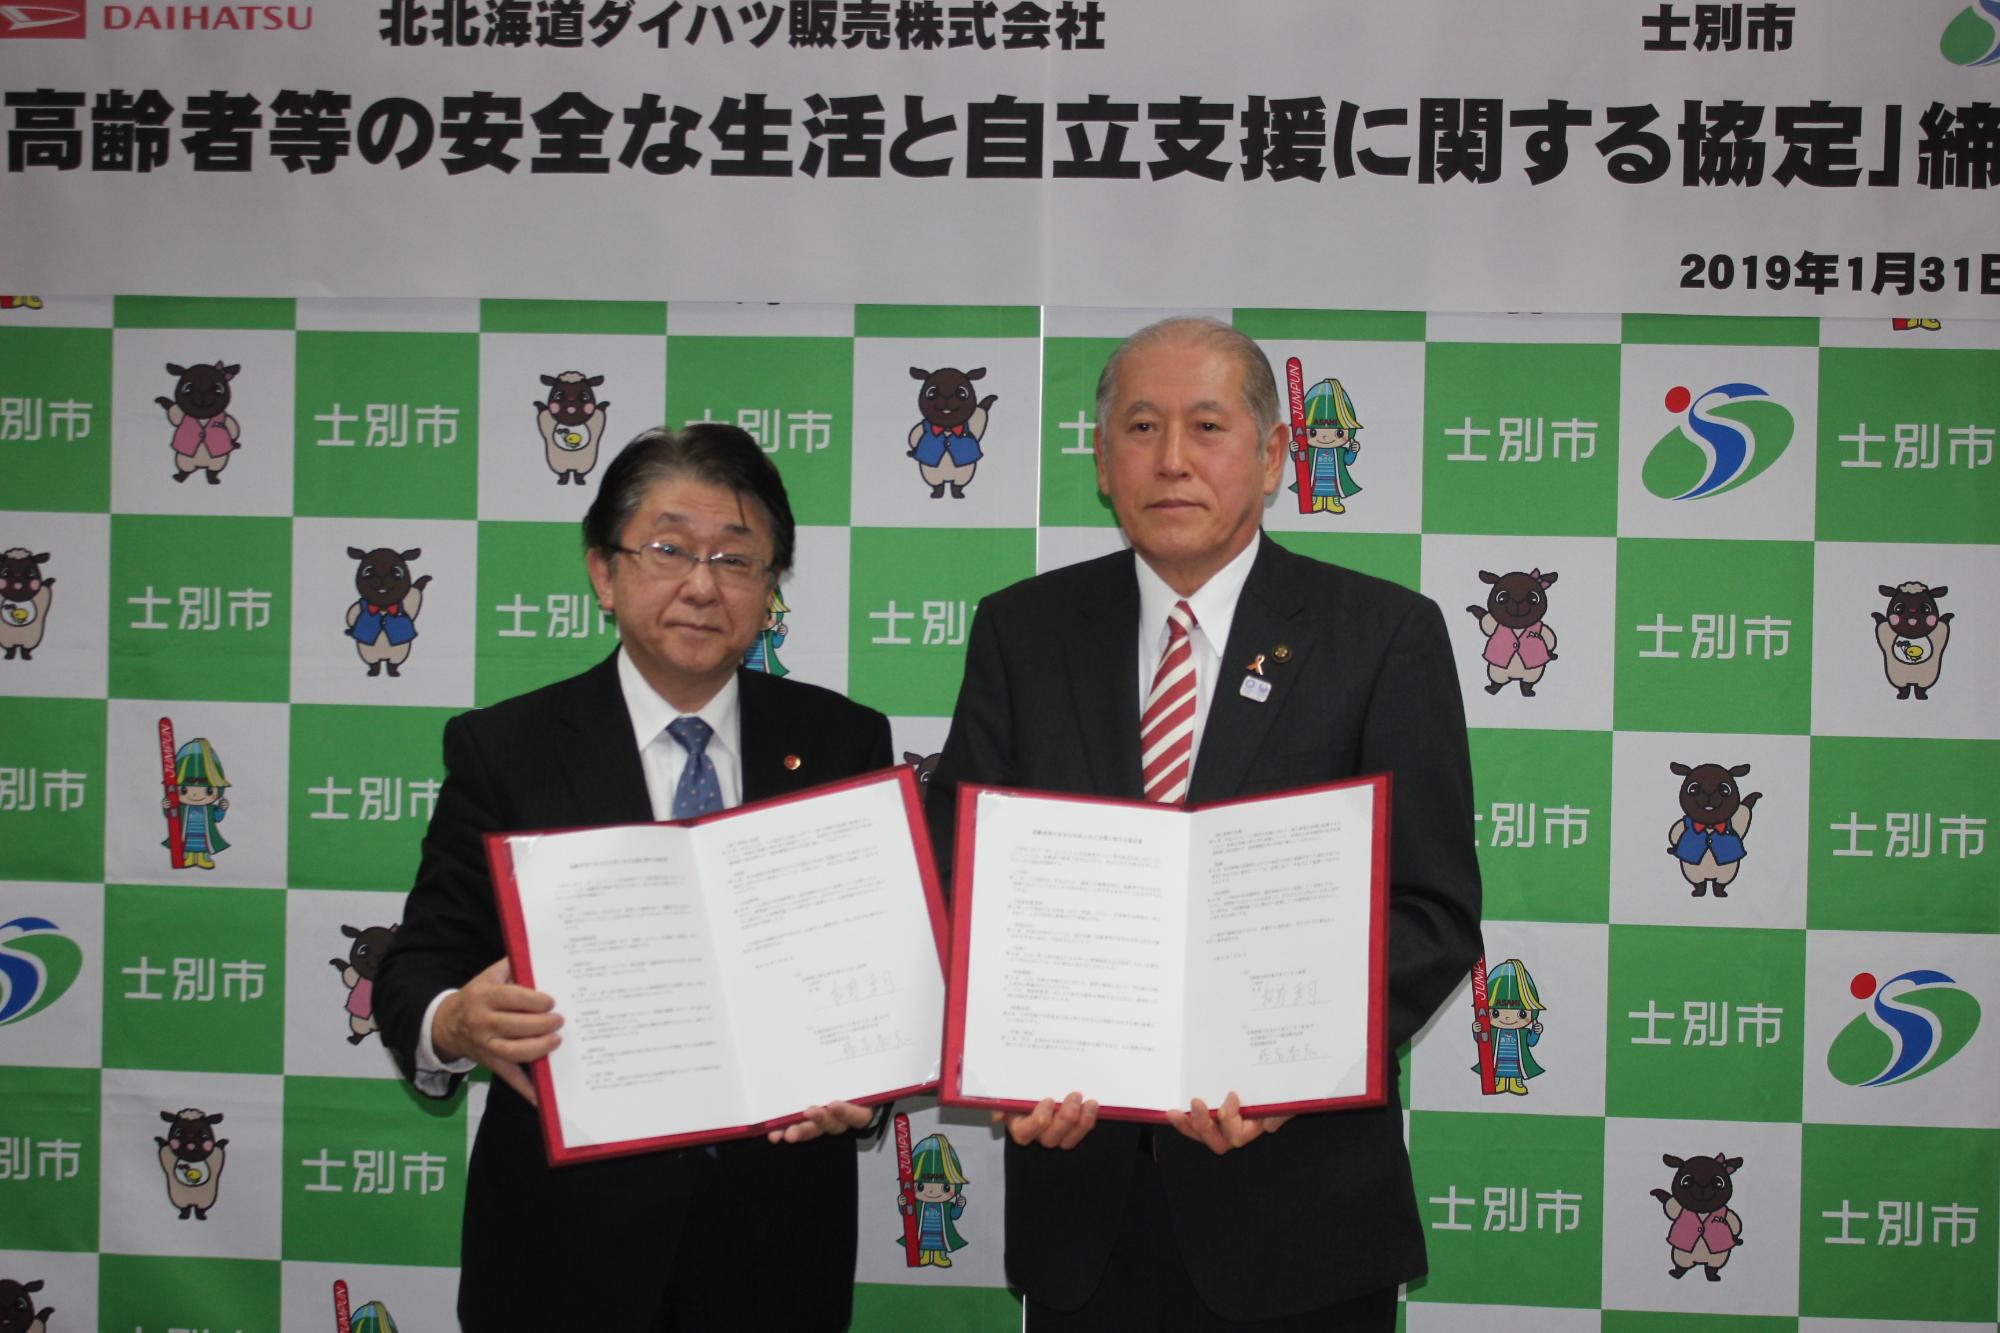 藤冨社長と市長が締結書を両手で持ちながら、北北海道ダイハツ販売株式会社との協定締結での記念撮影をしている写真